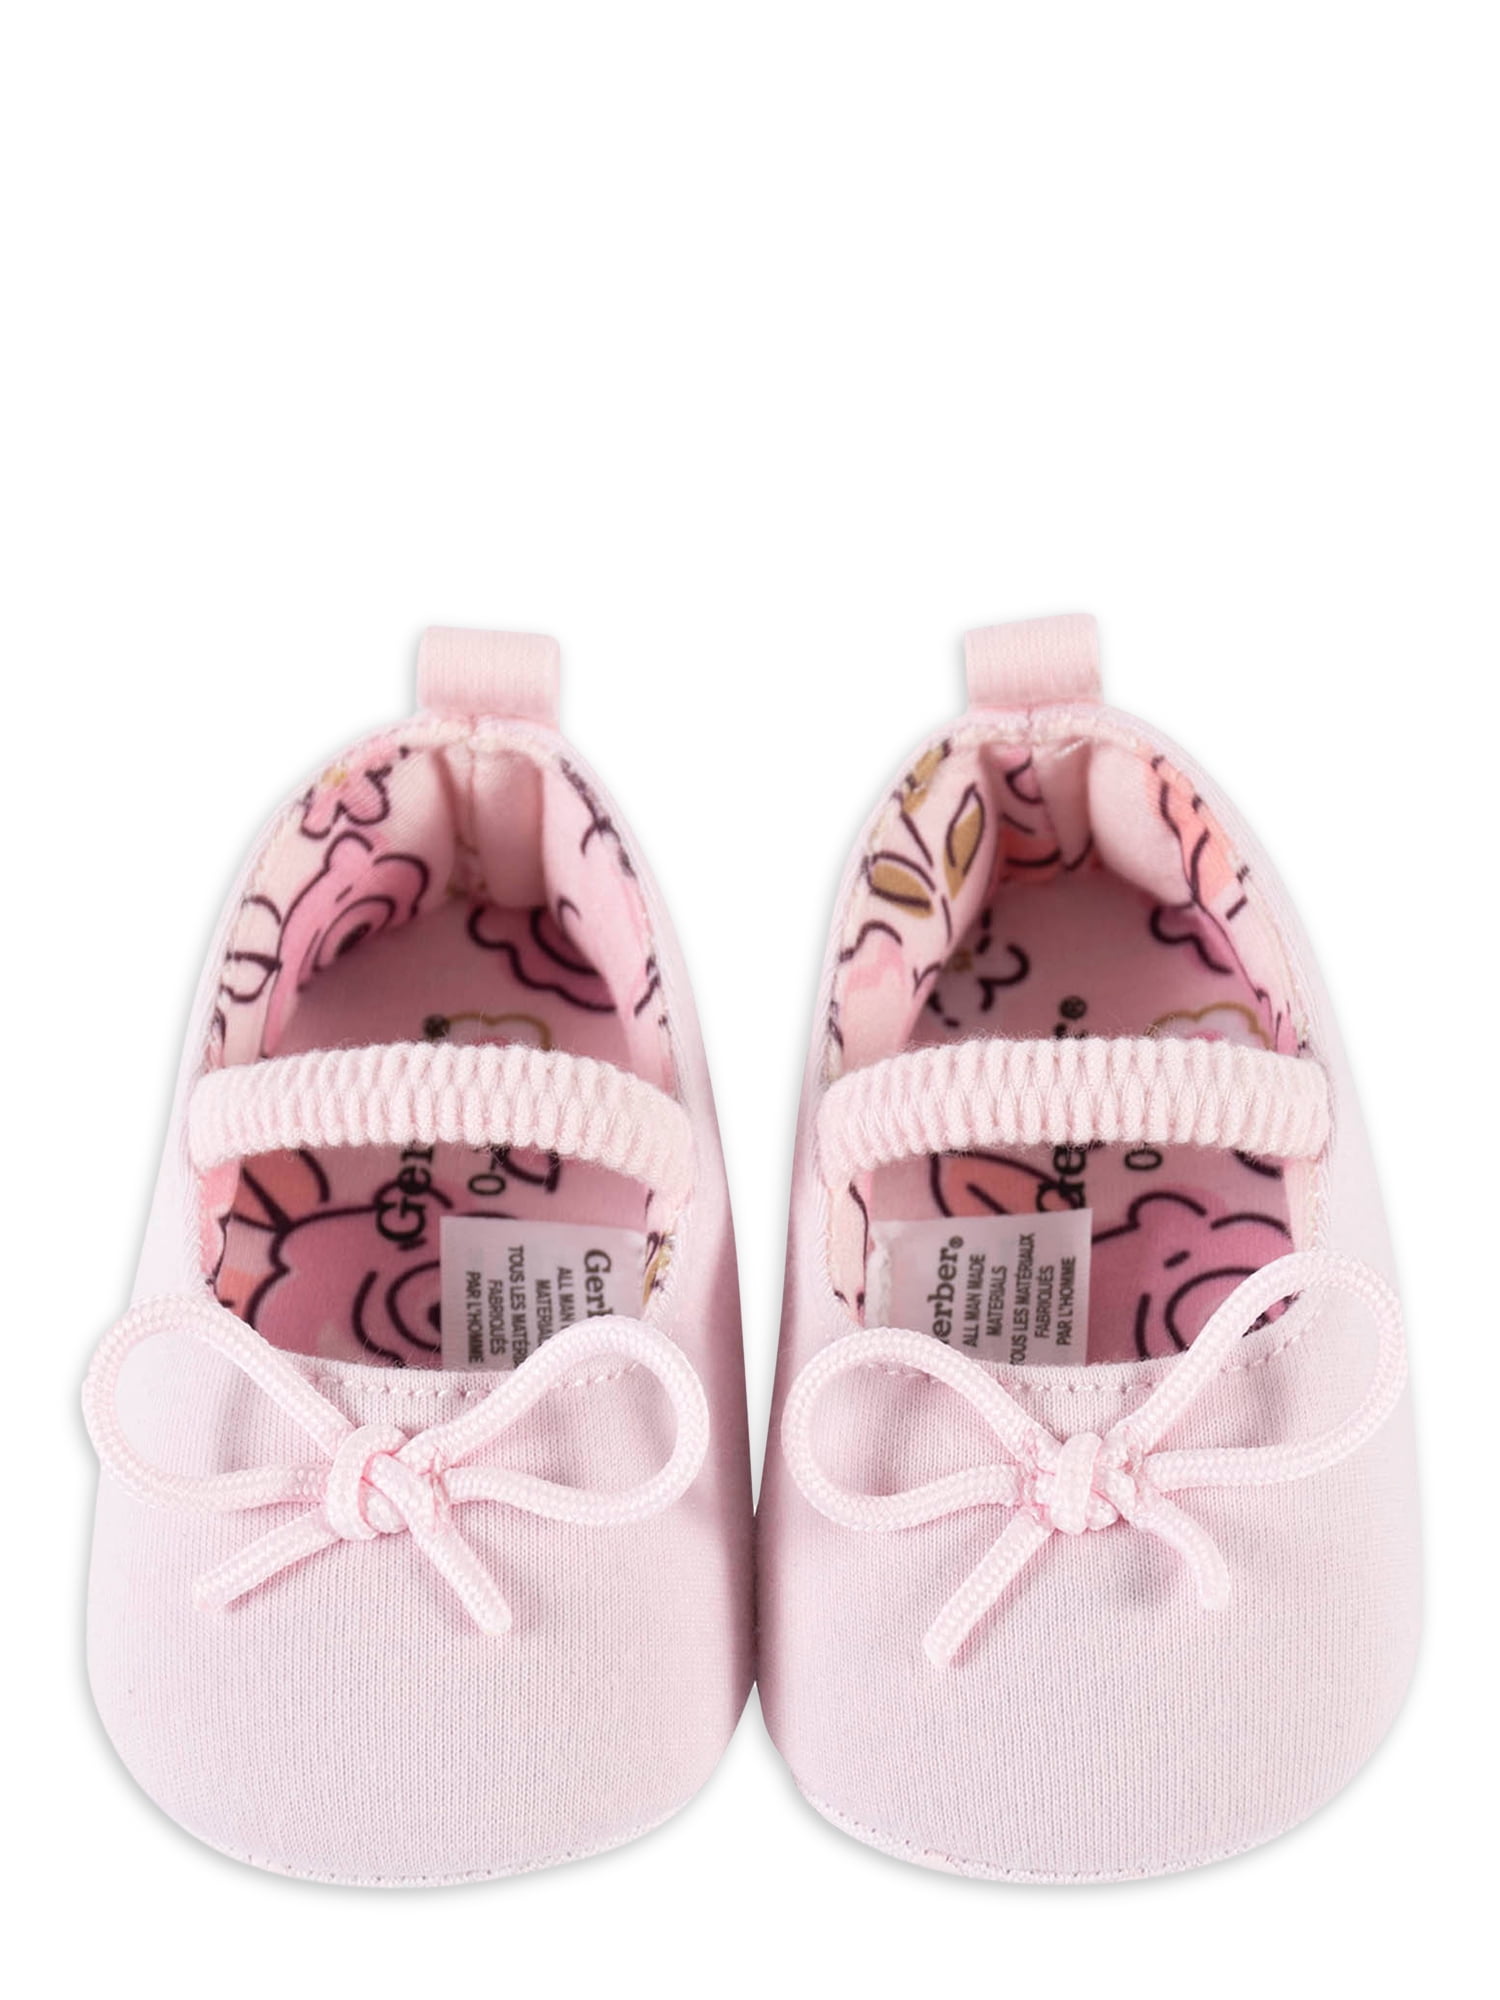 Gerber Baby Girl Ballet Slipper Shoes, 1-Pack (0-3M - 3/6M)